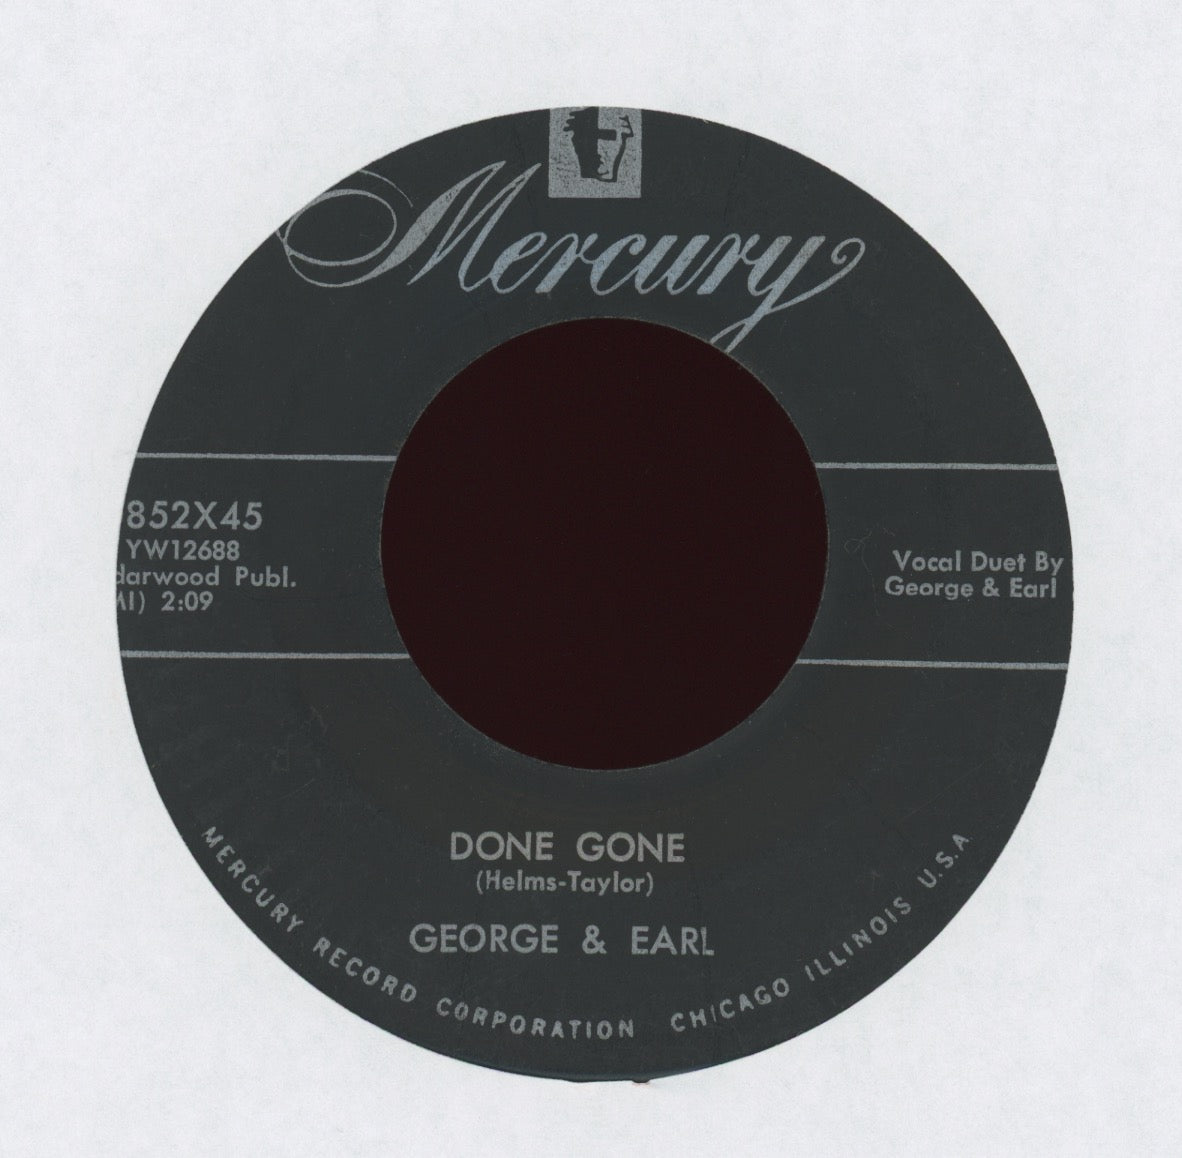 George & Earl - Done Gone on Mercury